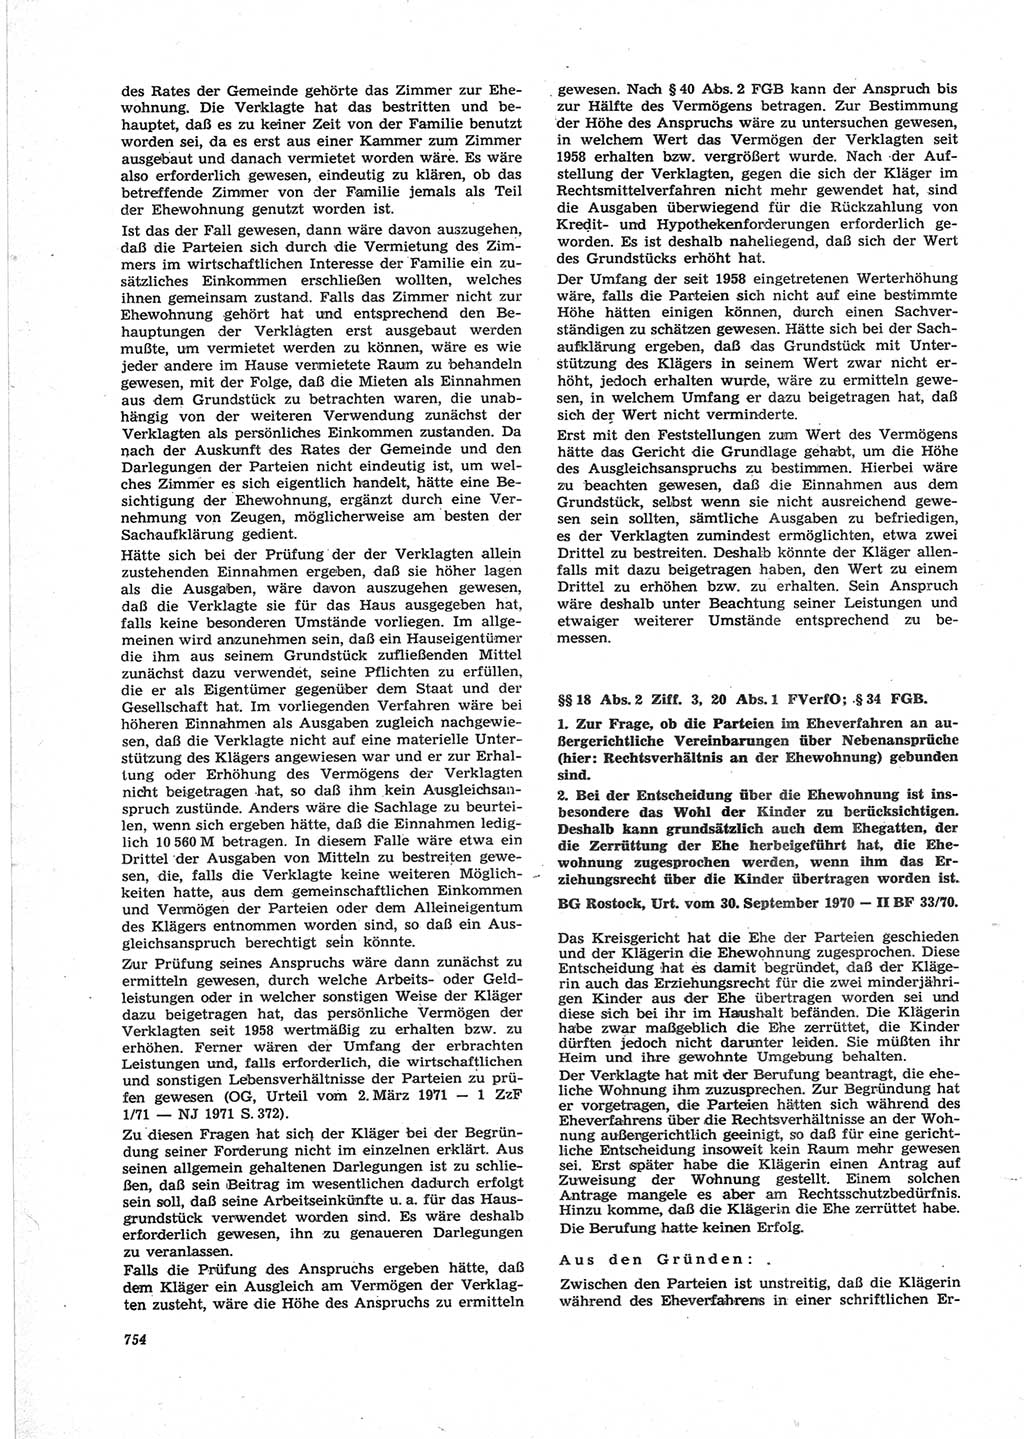 Neue Justiz (NJ), Zeitschrift für Recht und Rechtswissenschaft [Deutsche Demokratische Republik (DDR)], 25. Jahrgang 1971, Seite 754 (NJ DDR 1971, S. 754)